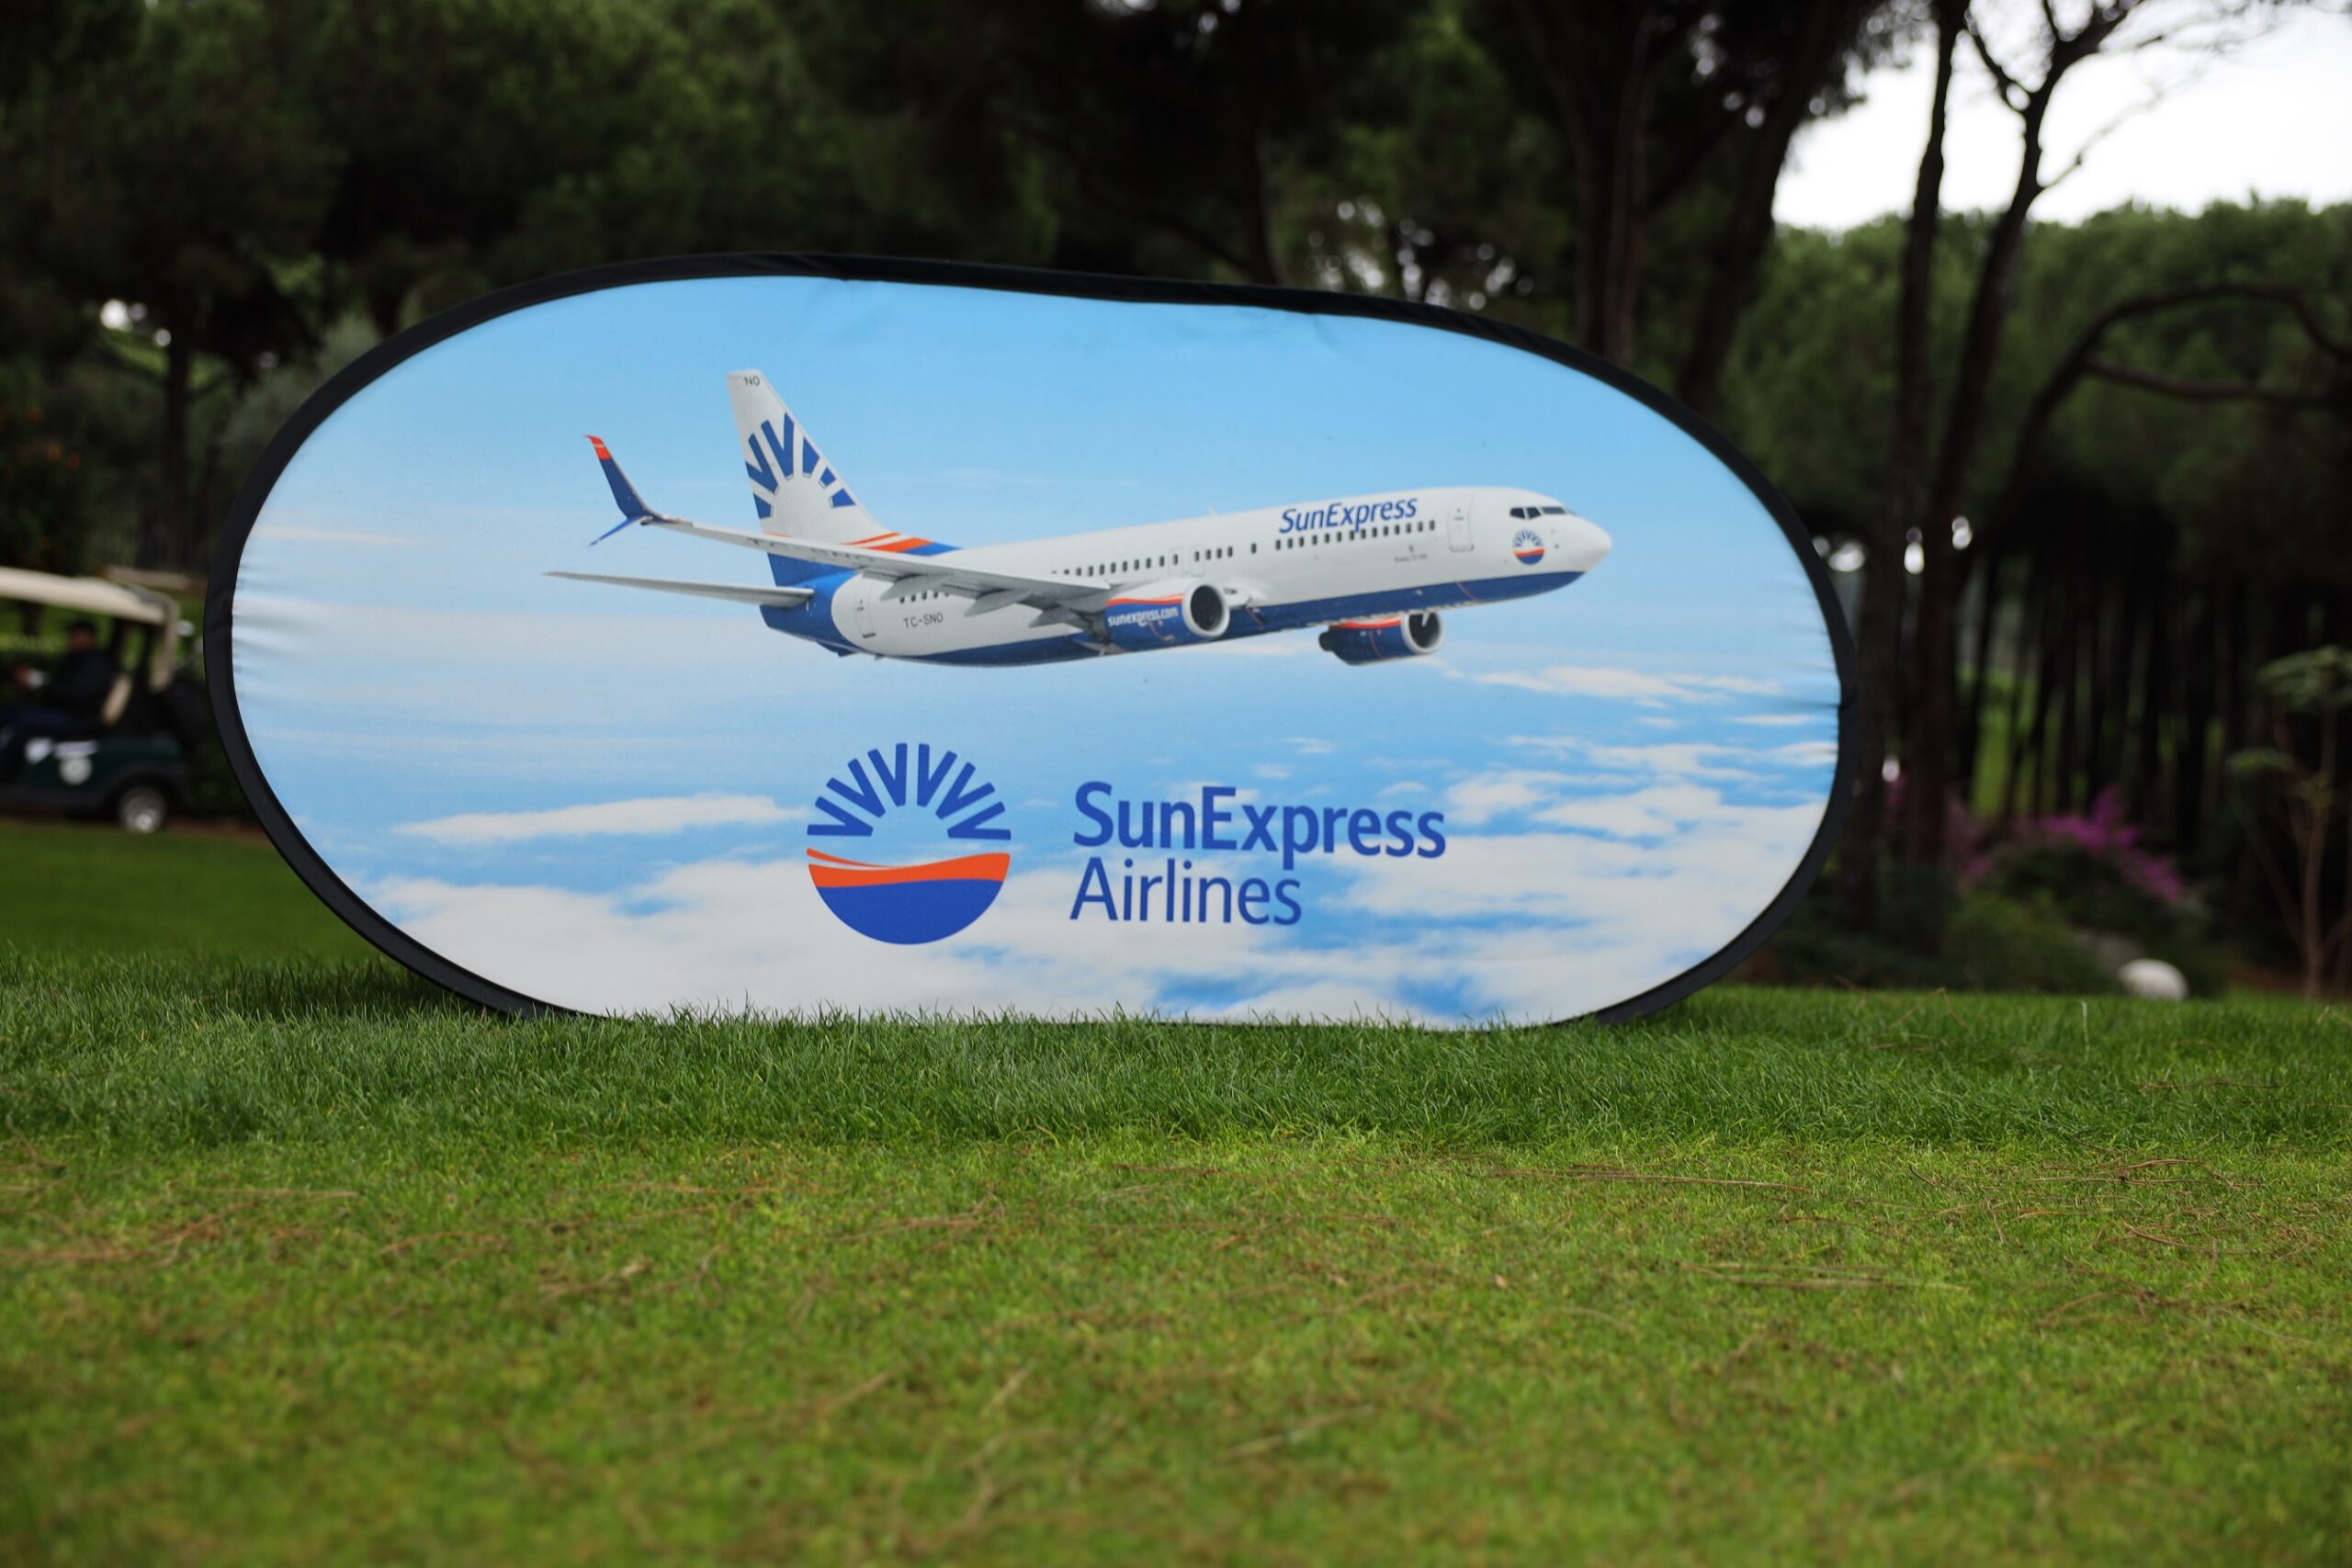 SunExpress’in Resmi Hava Yolu Partneri Olduğu Maxx Royal Golf Turnuvası’nda Ödüller Sahiplerini Buldu